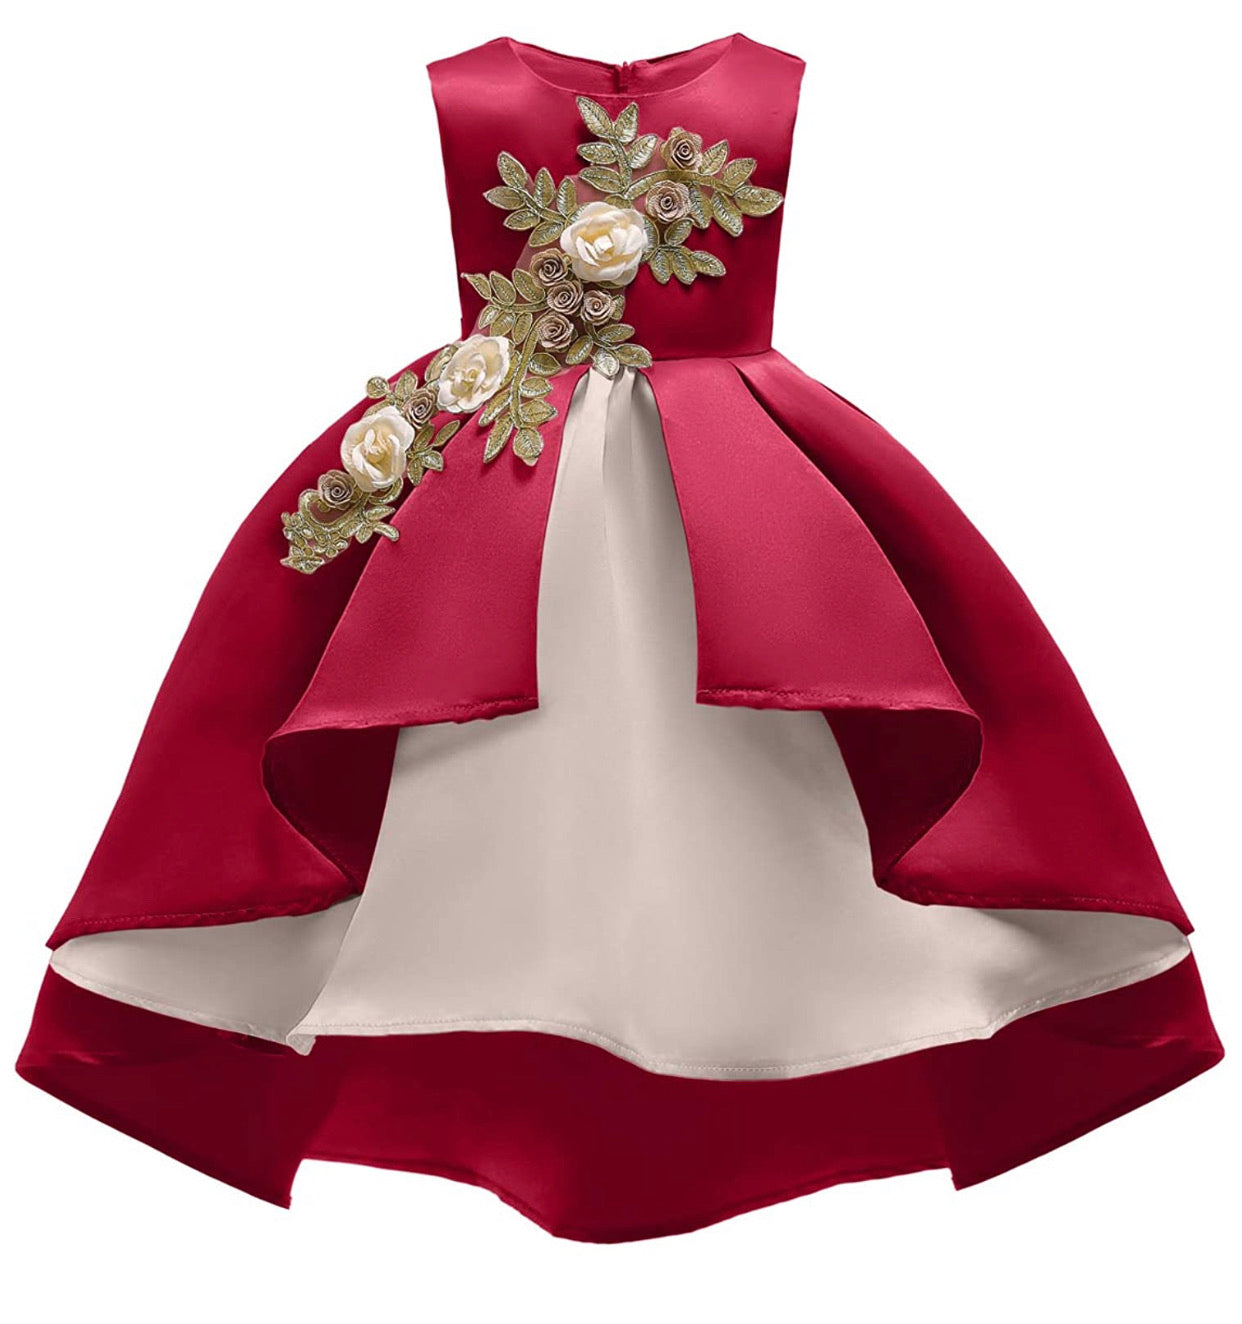 Lovely Full Flower Girl’s Dress, Sizes 2T - 9T (Red)